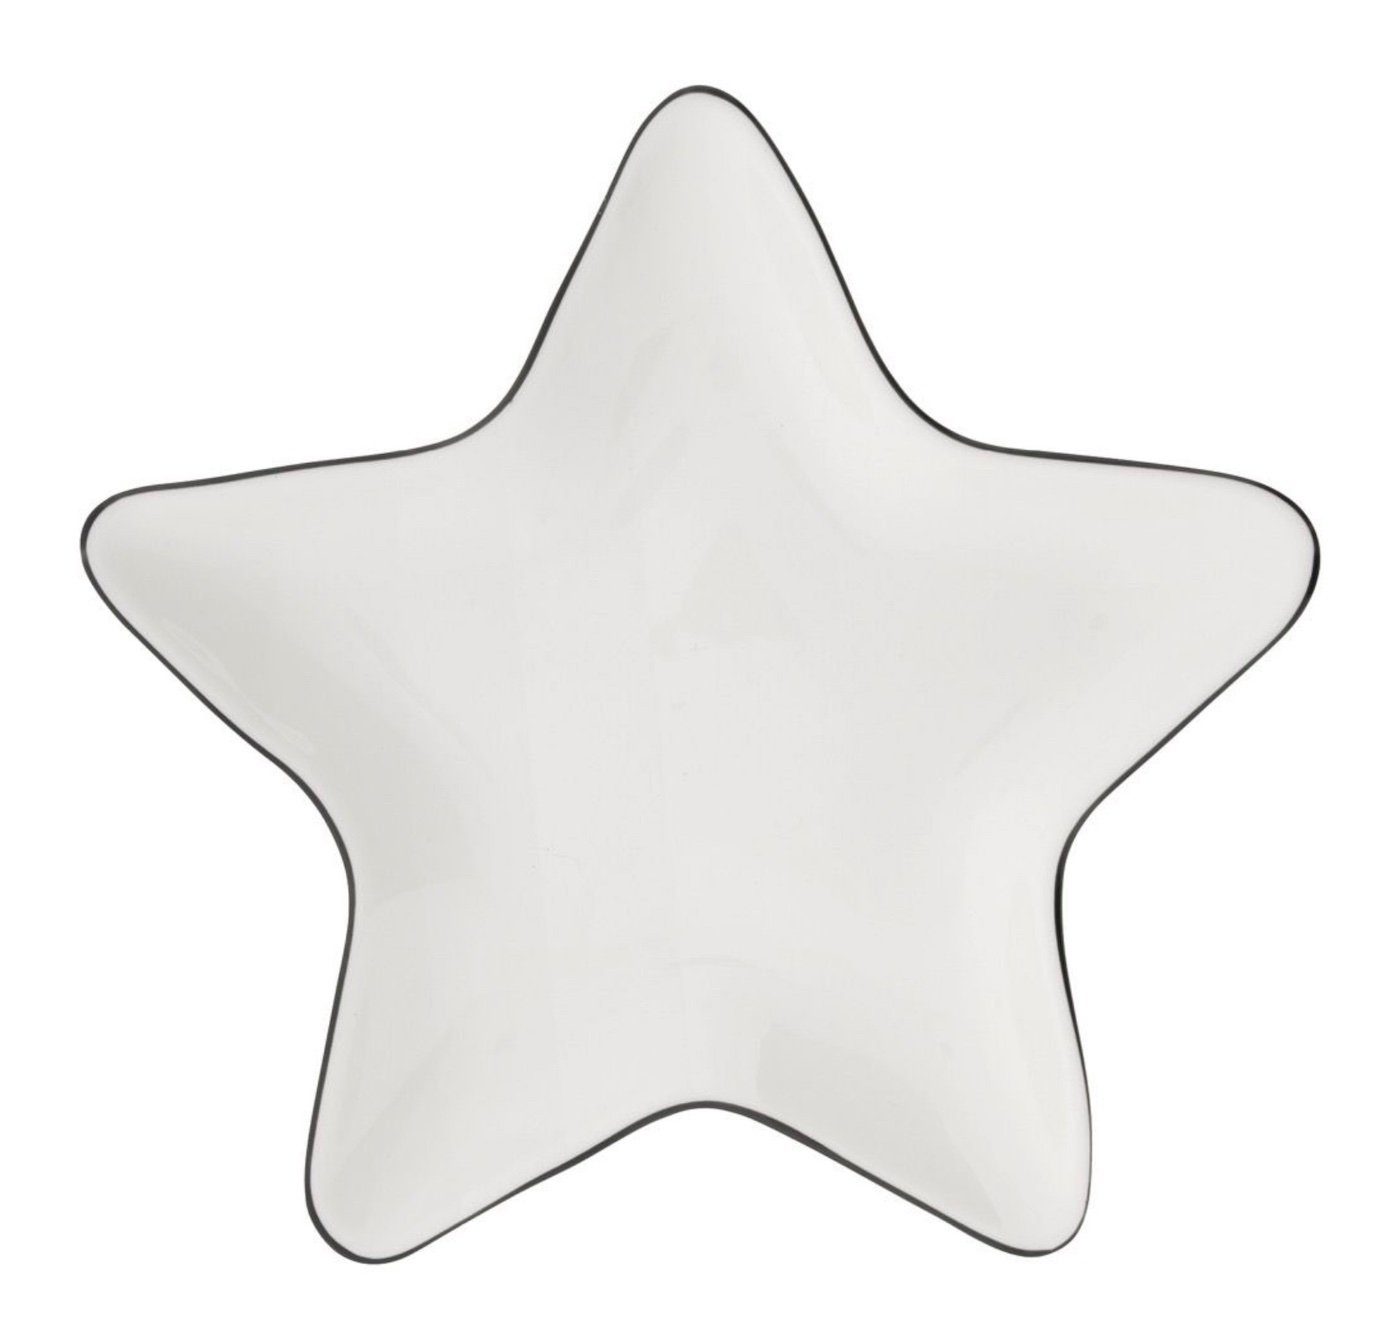 Bastion Teller Dekoteller schwarz 18x18cm, Keramik Collections handbemalt weiß Star